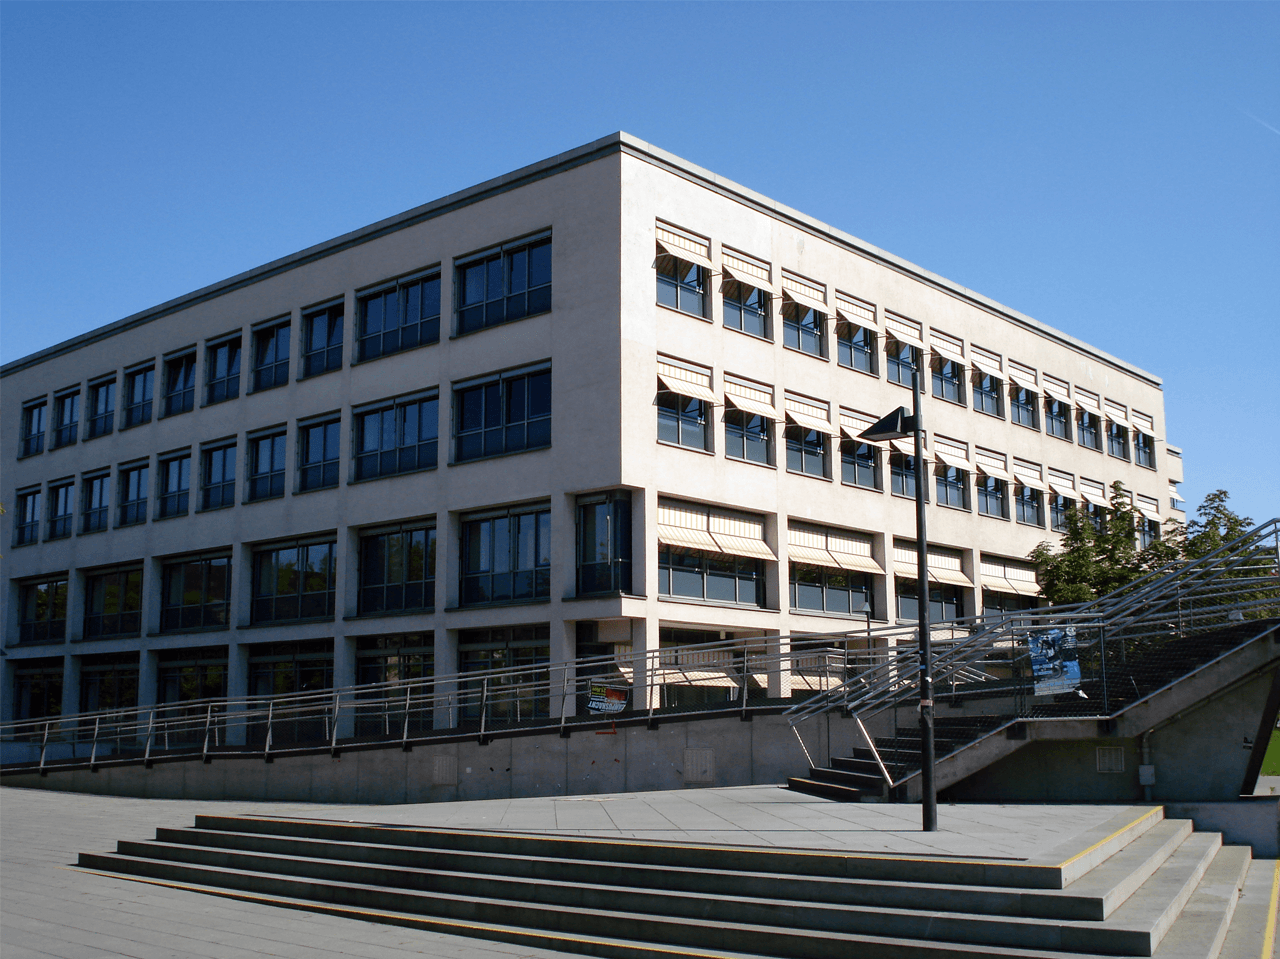 Juristische Fakultät, Von-Gerber-Bau; Kay Körner from Dresden Seevortstadt/Großer Garten, CC BY 2.5